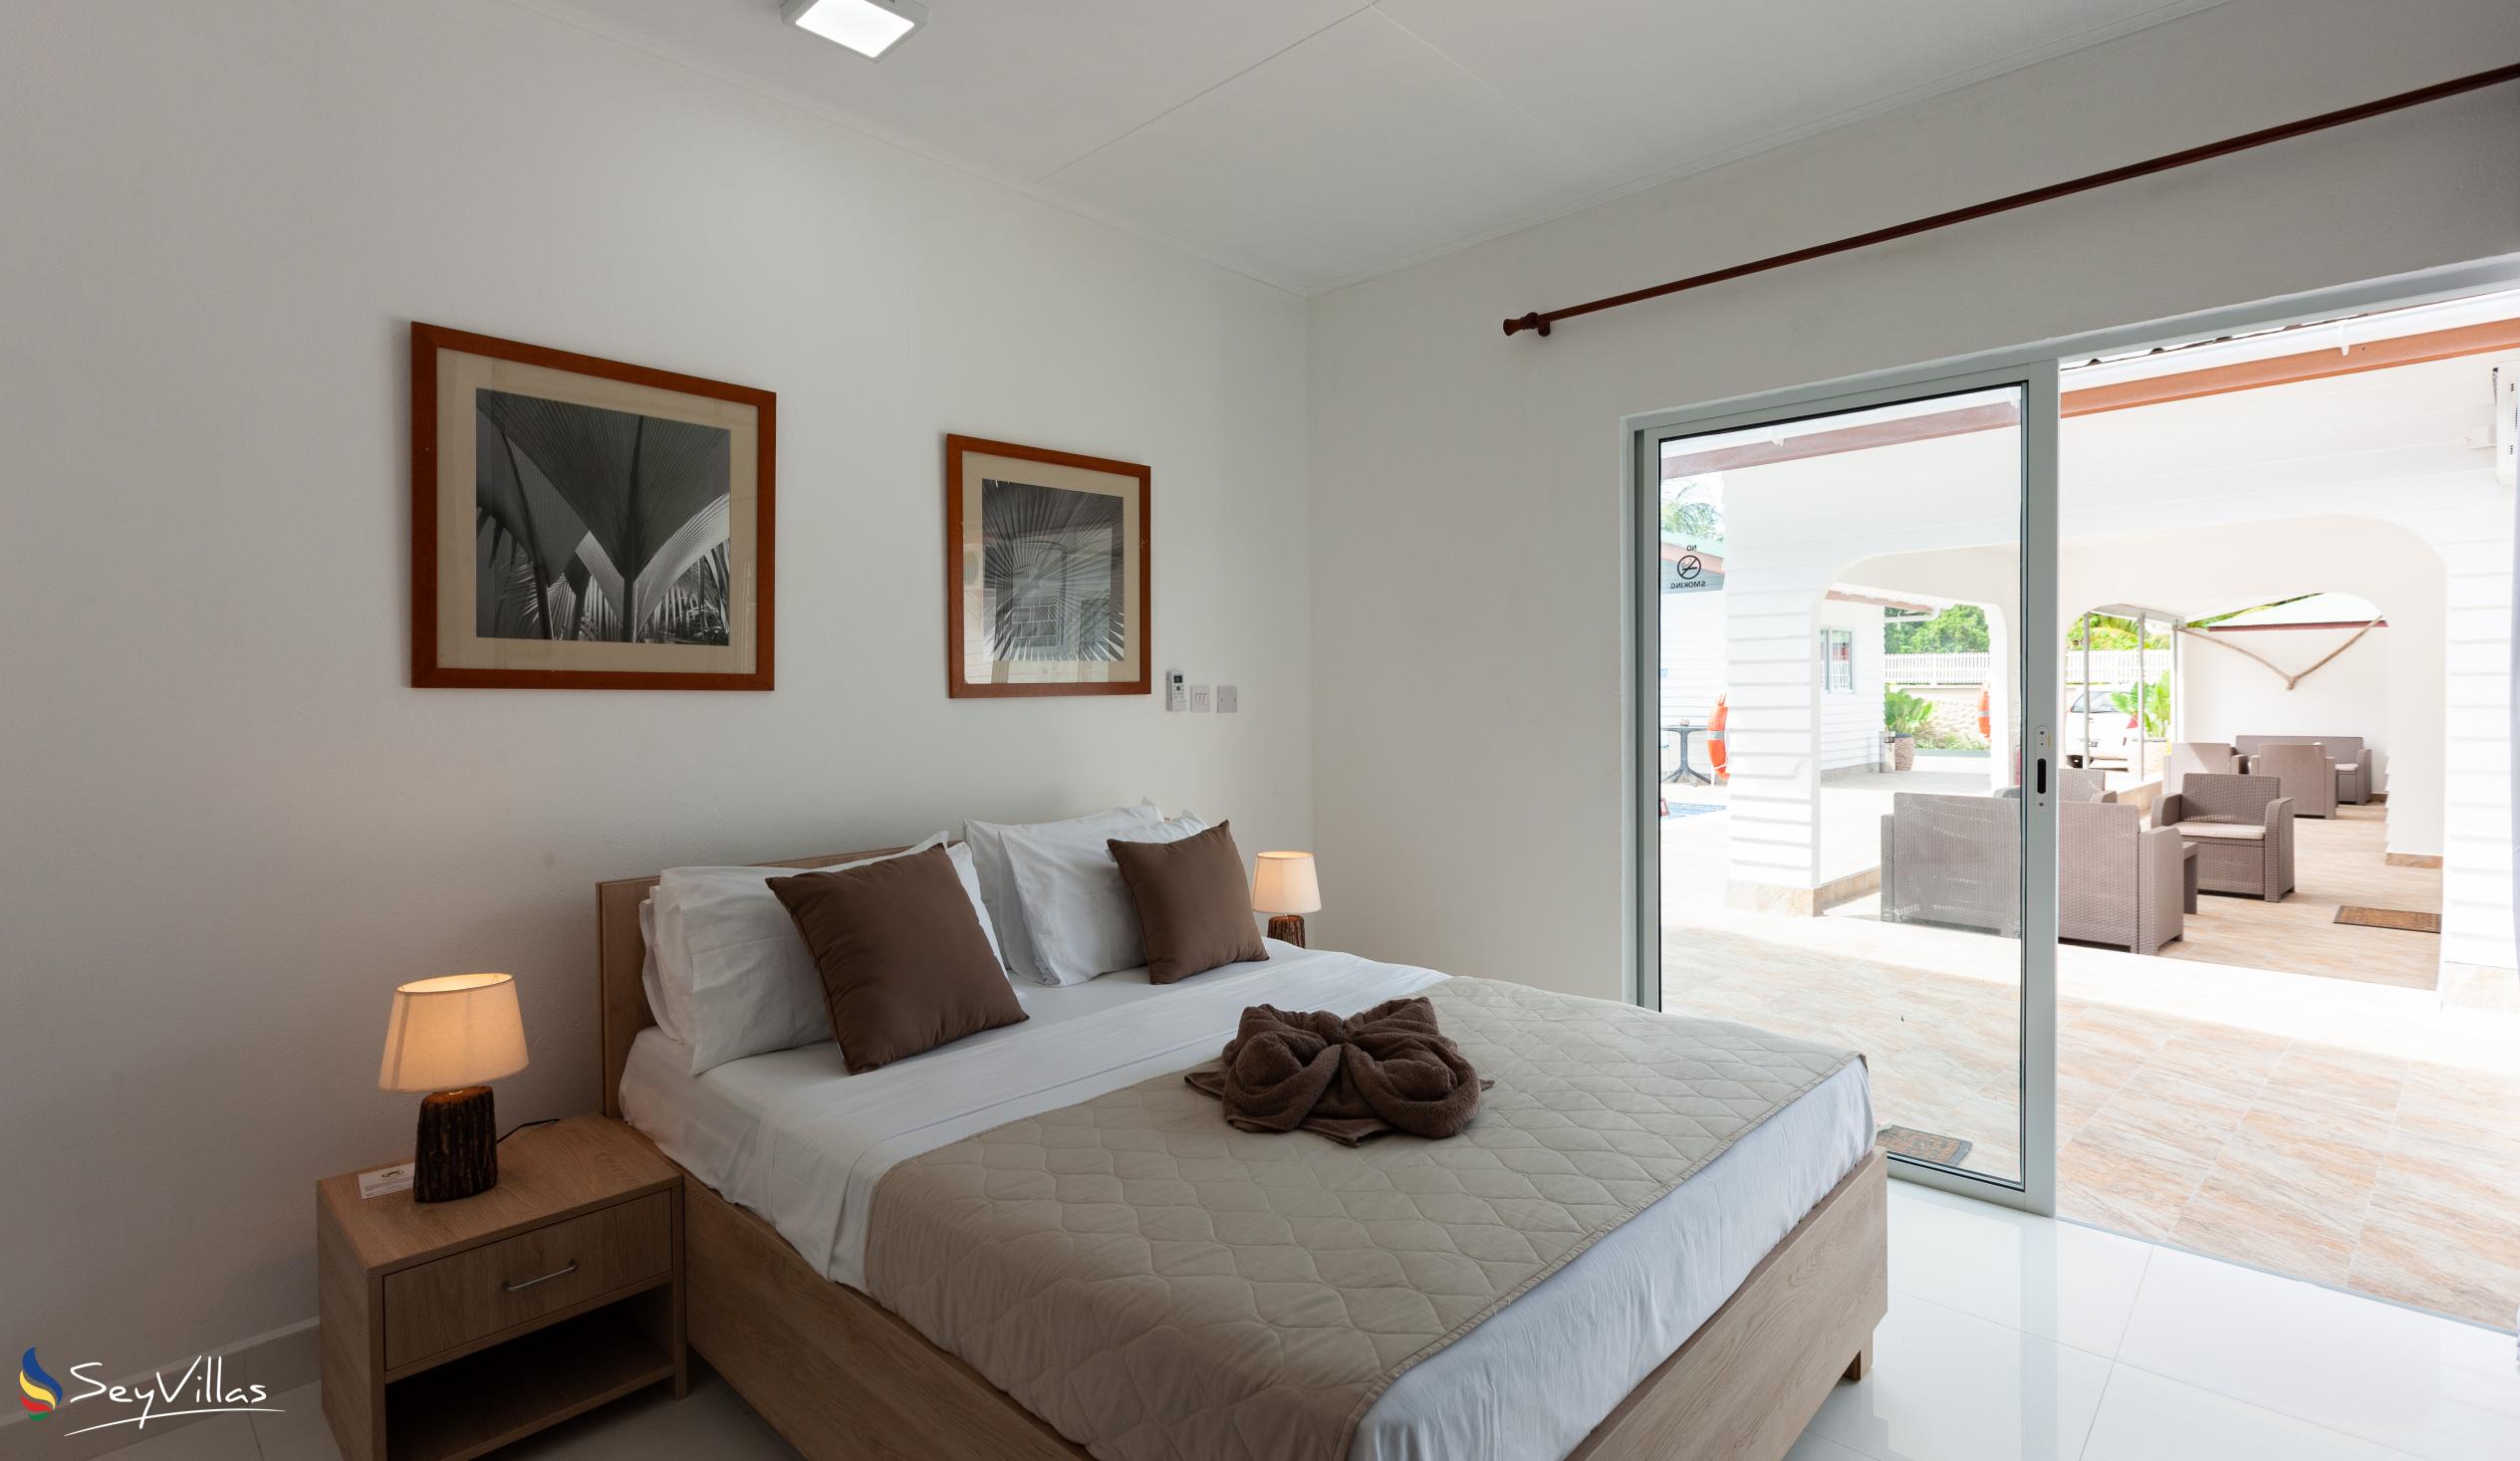 Foto 23: Hotel Plein Soleil - Deluxe Zimmer mit Queensize-Bett - Praslin (Seychellen)